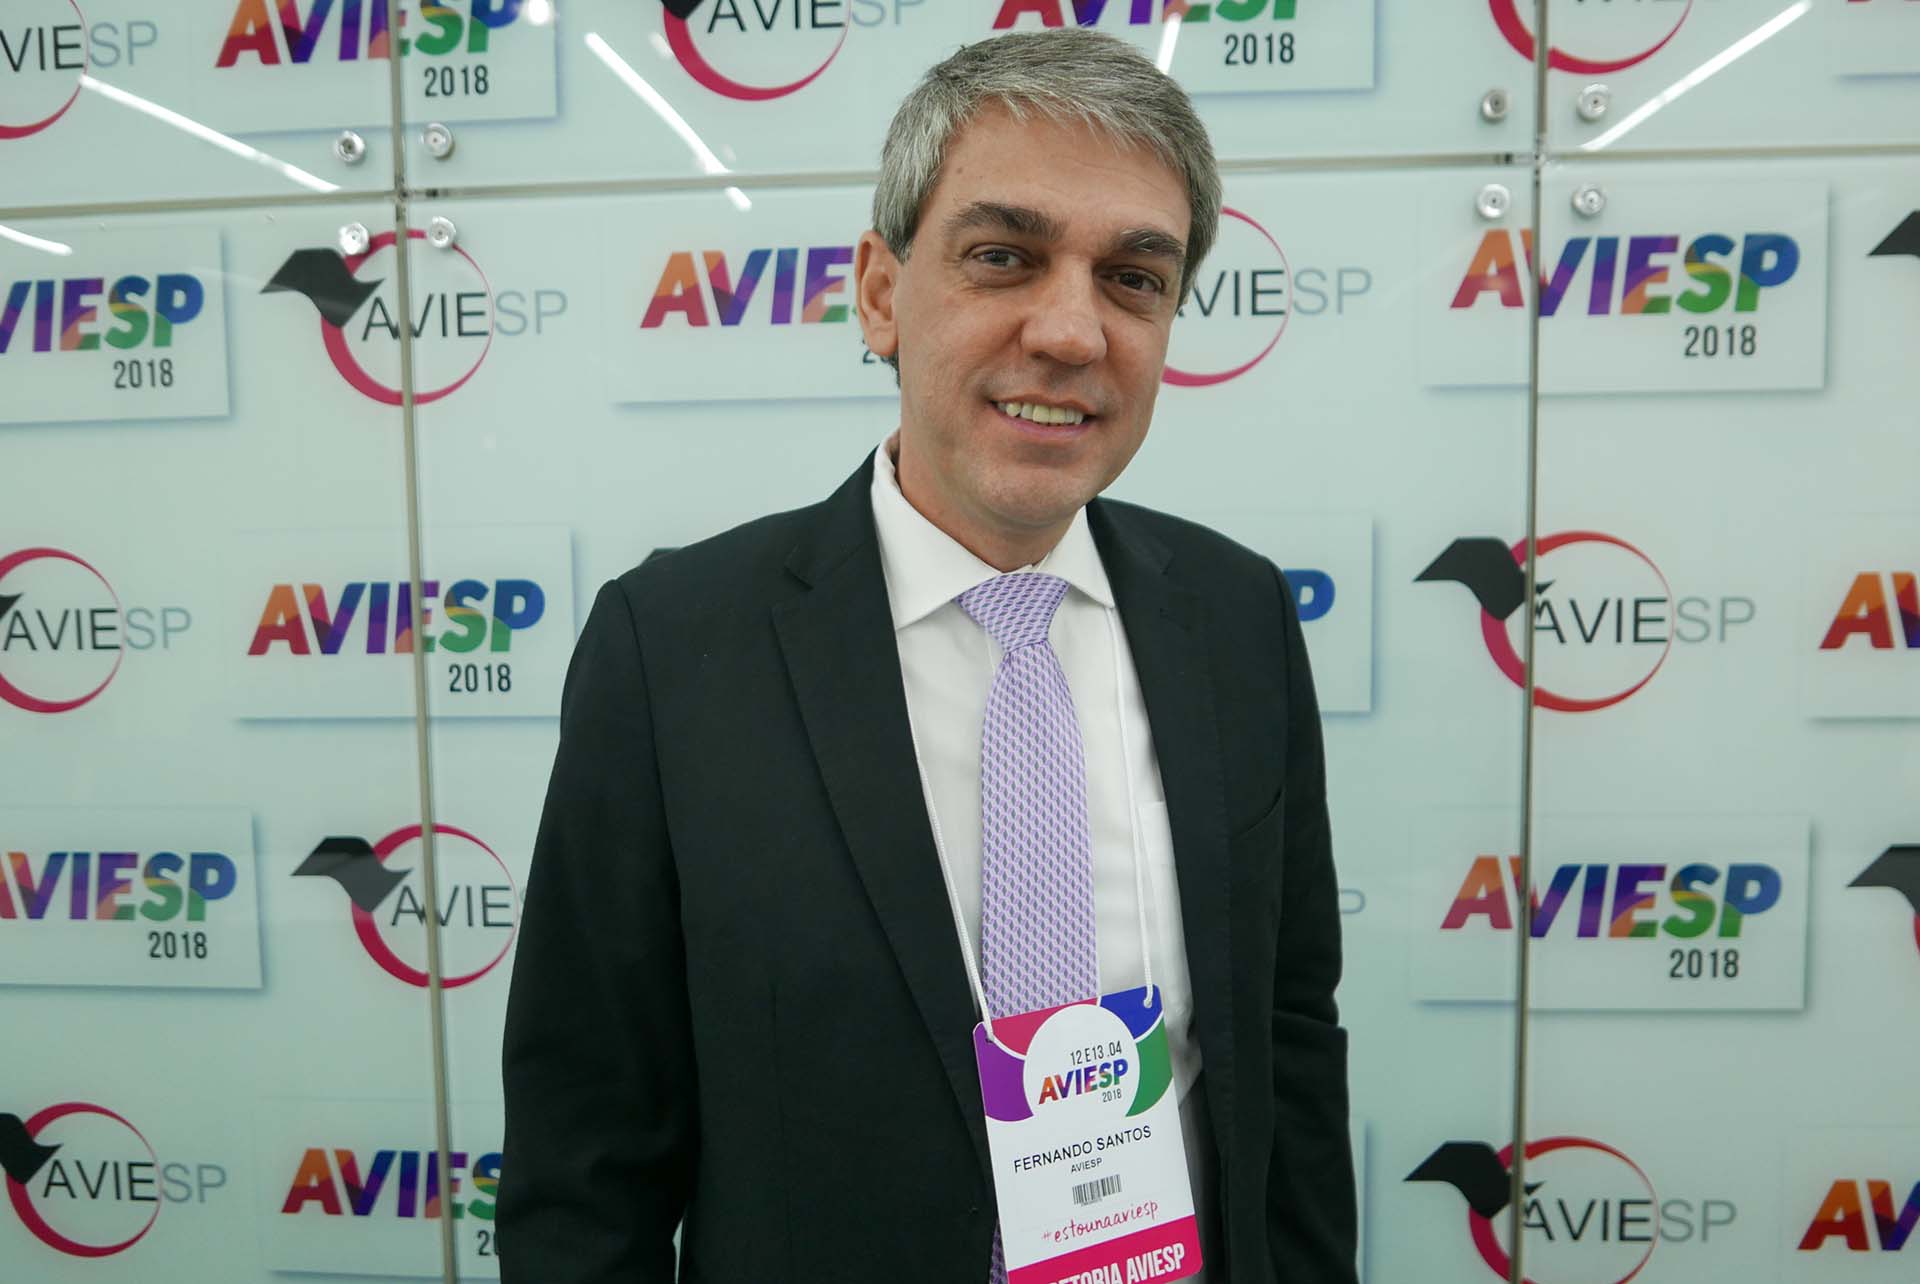 Fernando Santos, presidente da Aviesp